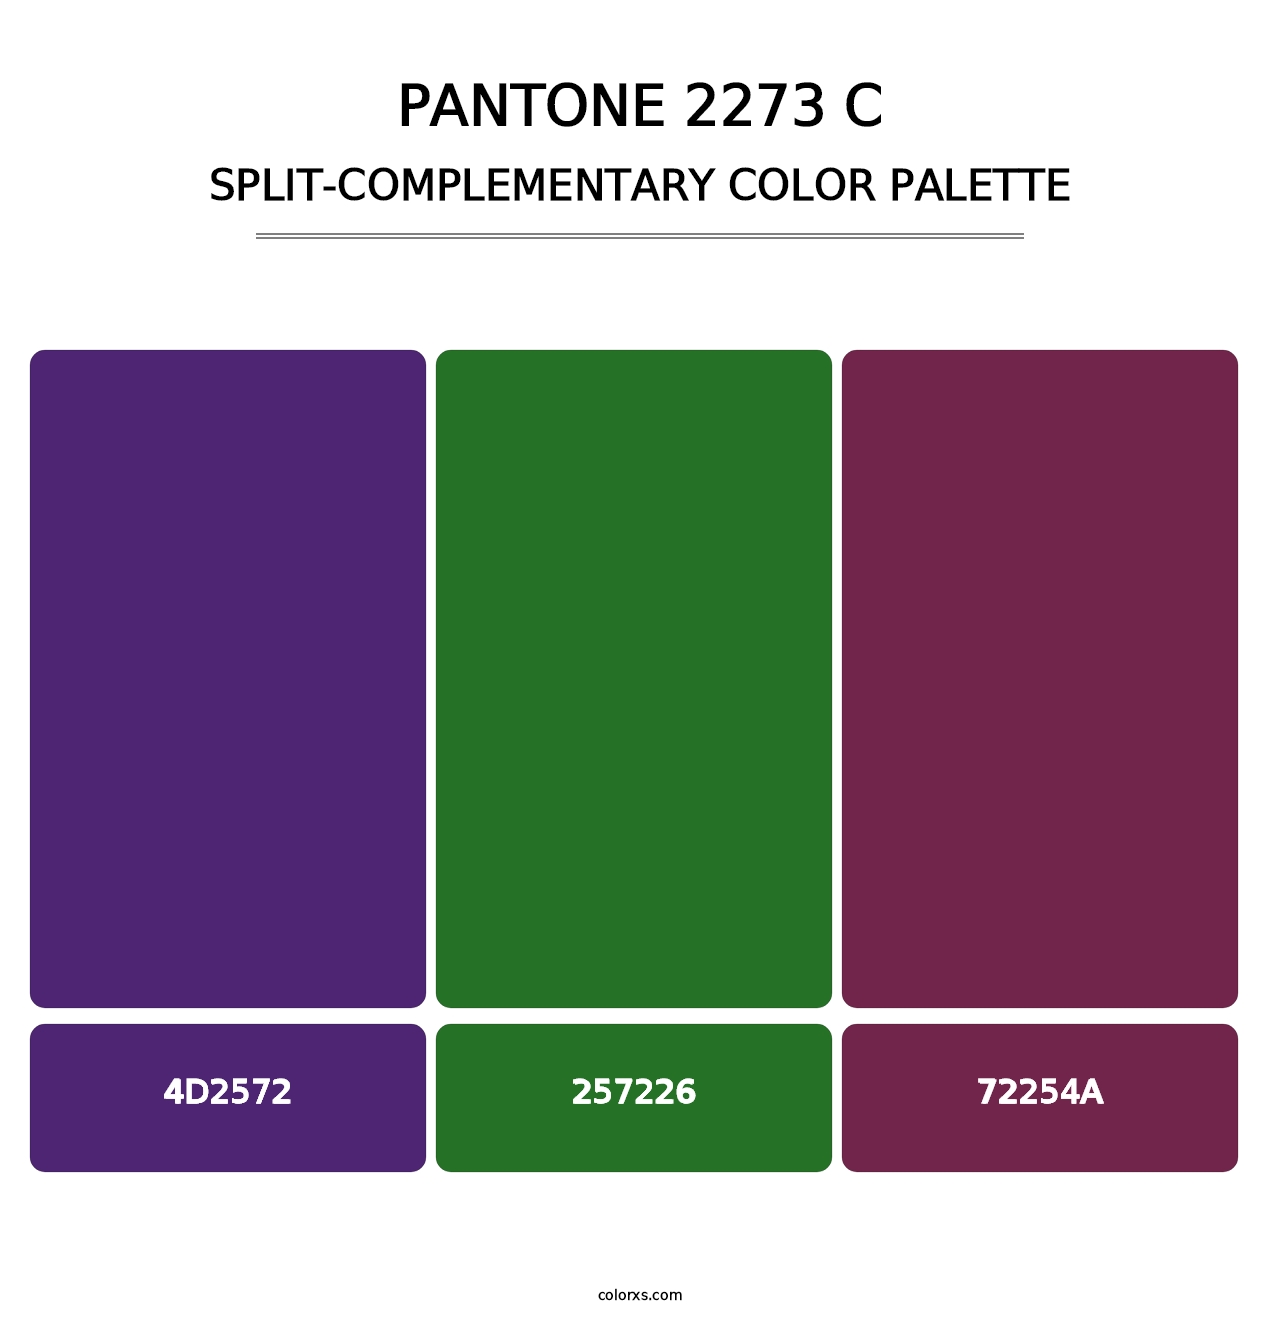 PANTONE 2273 C - Split-Complementary Color Palette